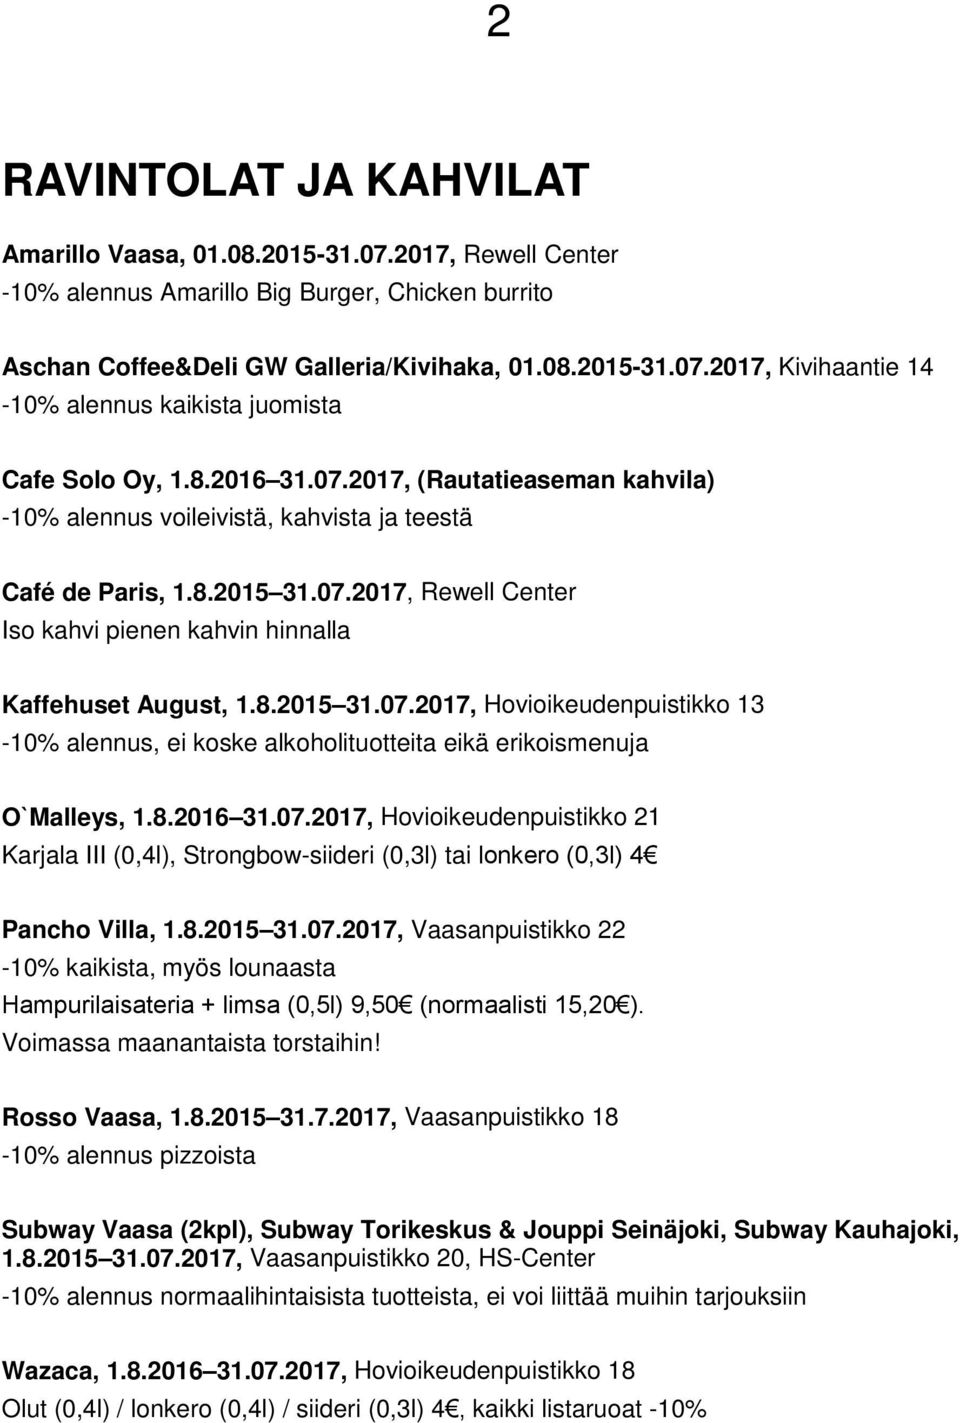 8.2016 31.07.2017, Hovioikeudenpuistikko 21 Karjala III (0,4l), Strongbow-siideri (0,3l) tai lonkero (0,3l) 4 Pancho Villa, 1.8.2015 31.07.2017, Vaasanpuistikko 22-10% kaikista, myös lounaasta Hampurilaisateria + limsa (0,5l) 9,50 (normaalisti 15,20 ).